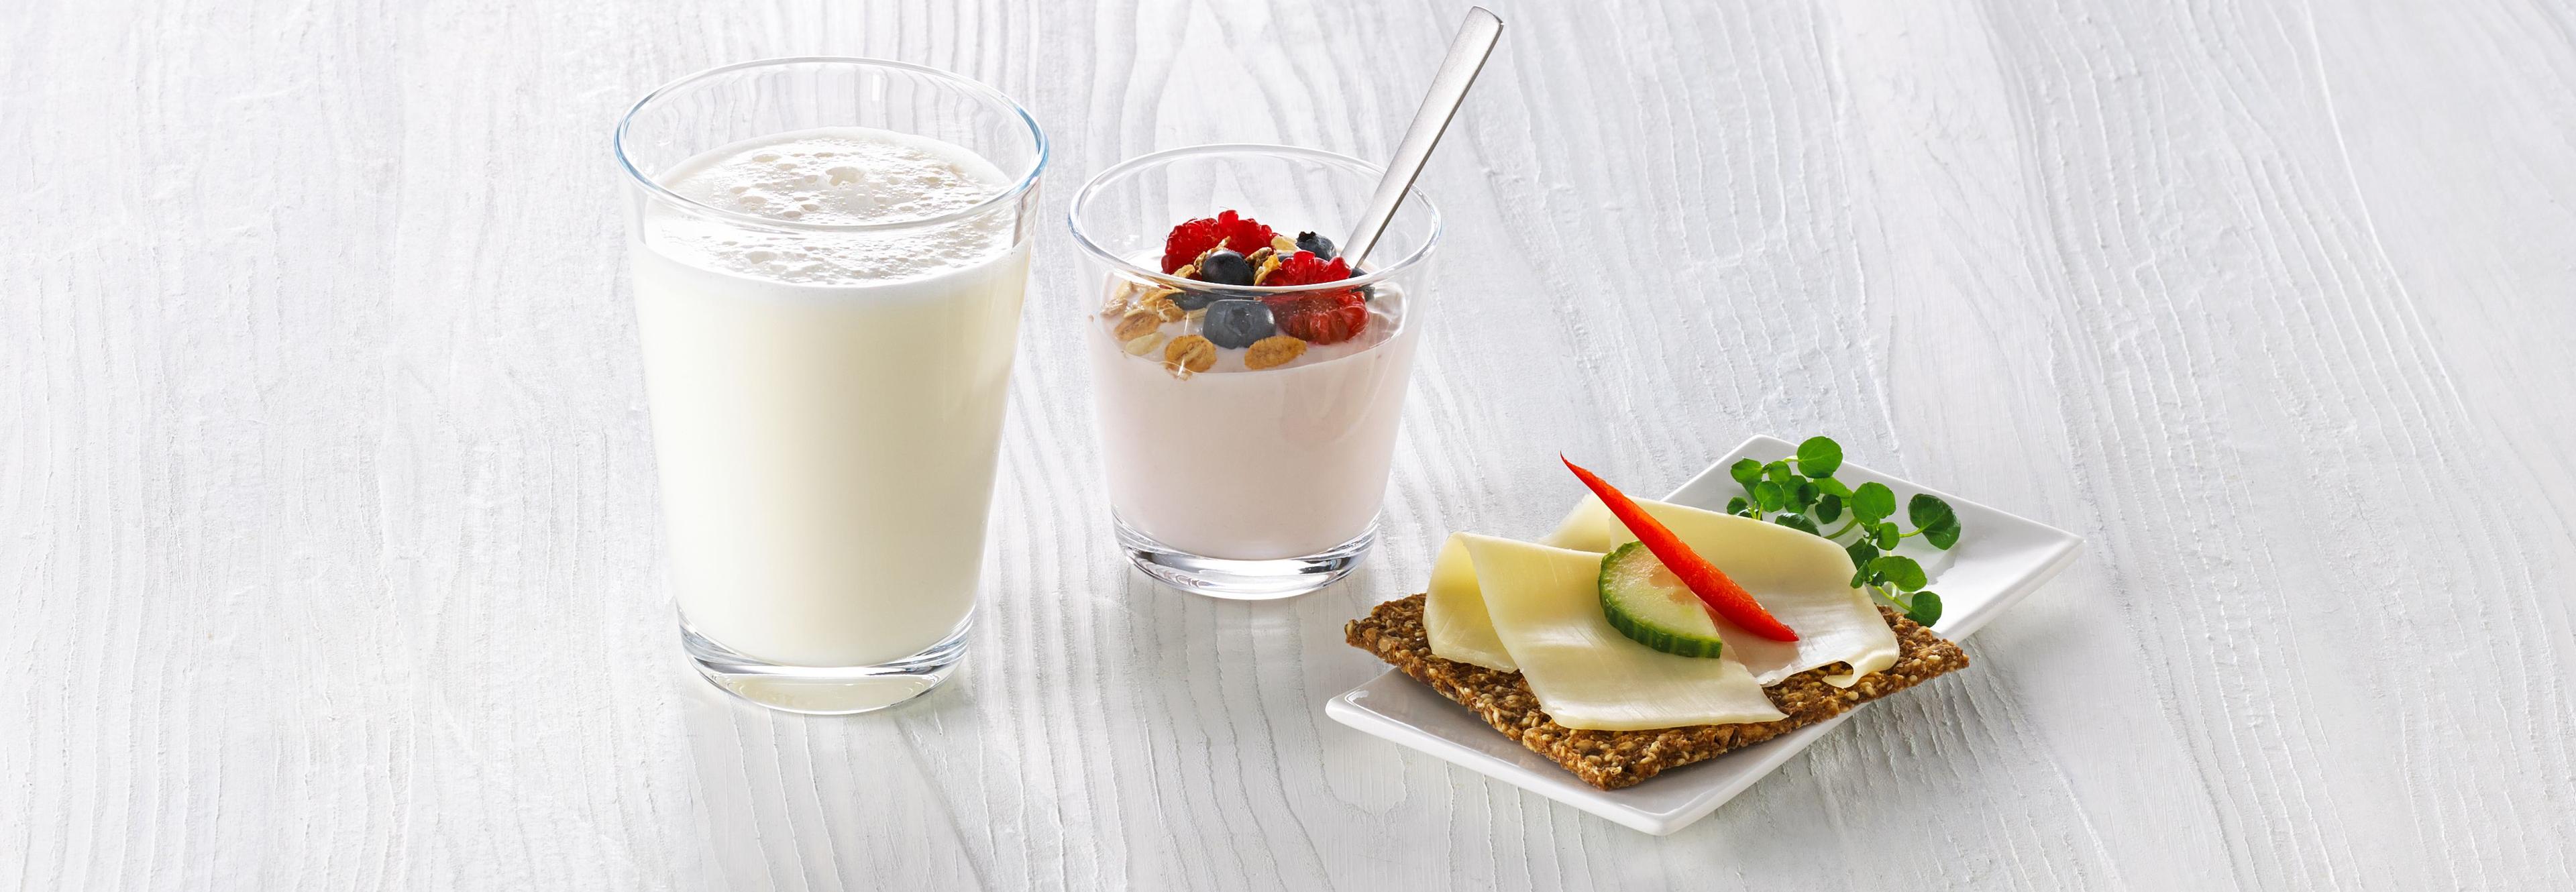 Ett glass melk, et beger yoghurt med litt müsli og friske bær, og ett knekkebrød med gulost, agurk og paprika.